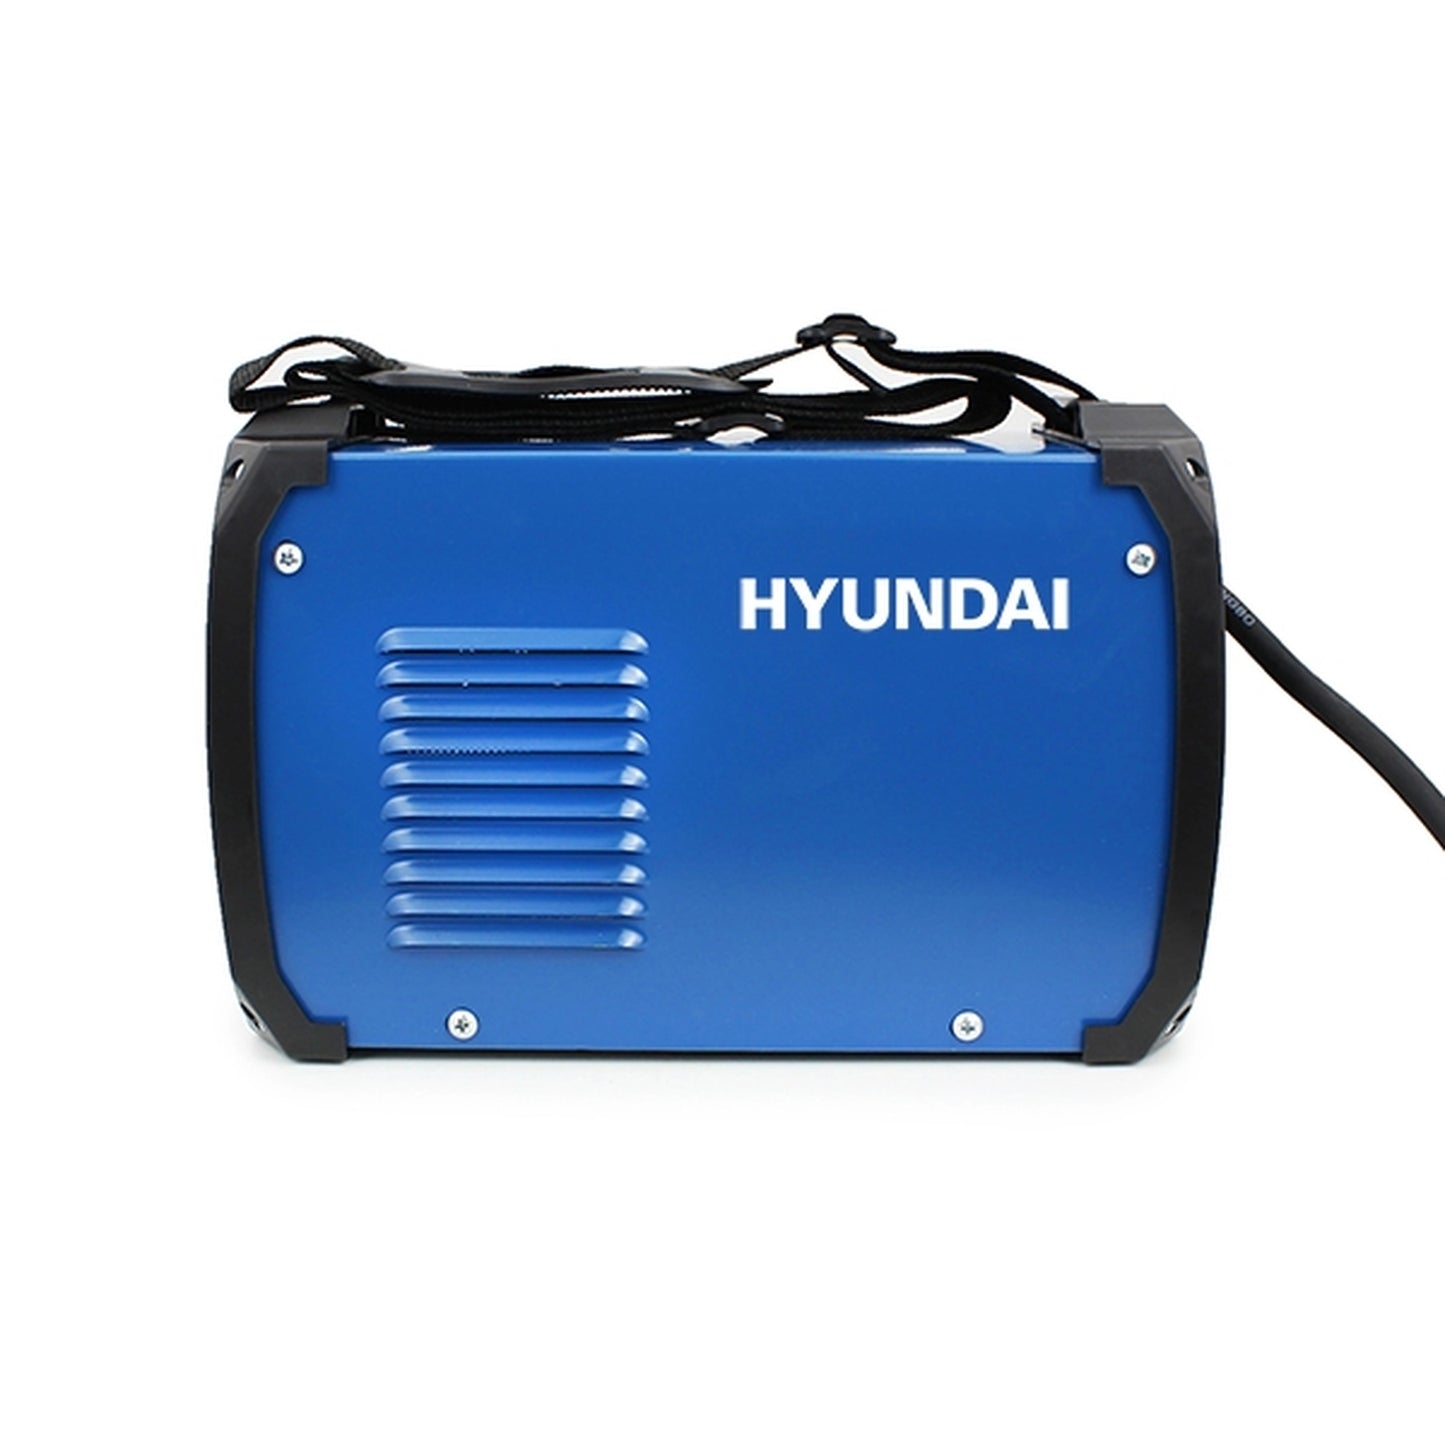 Hyundai HYMMA201 MMA/ARC Inverter Welder